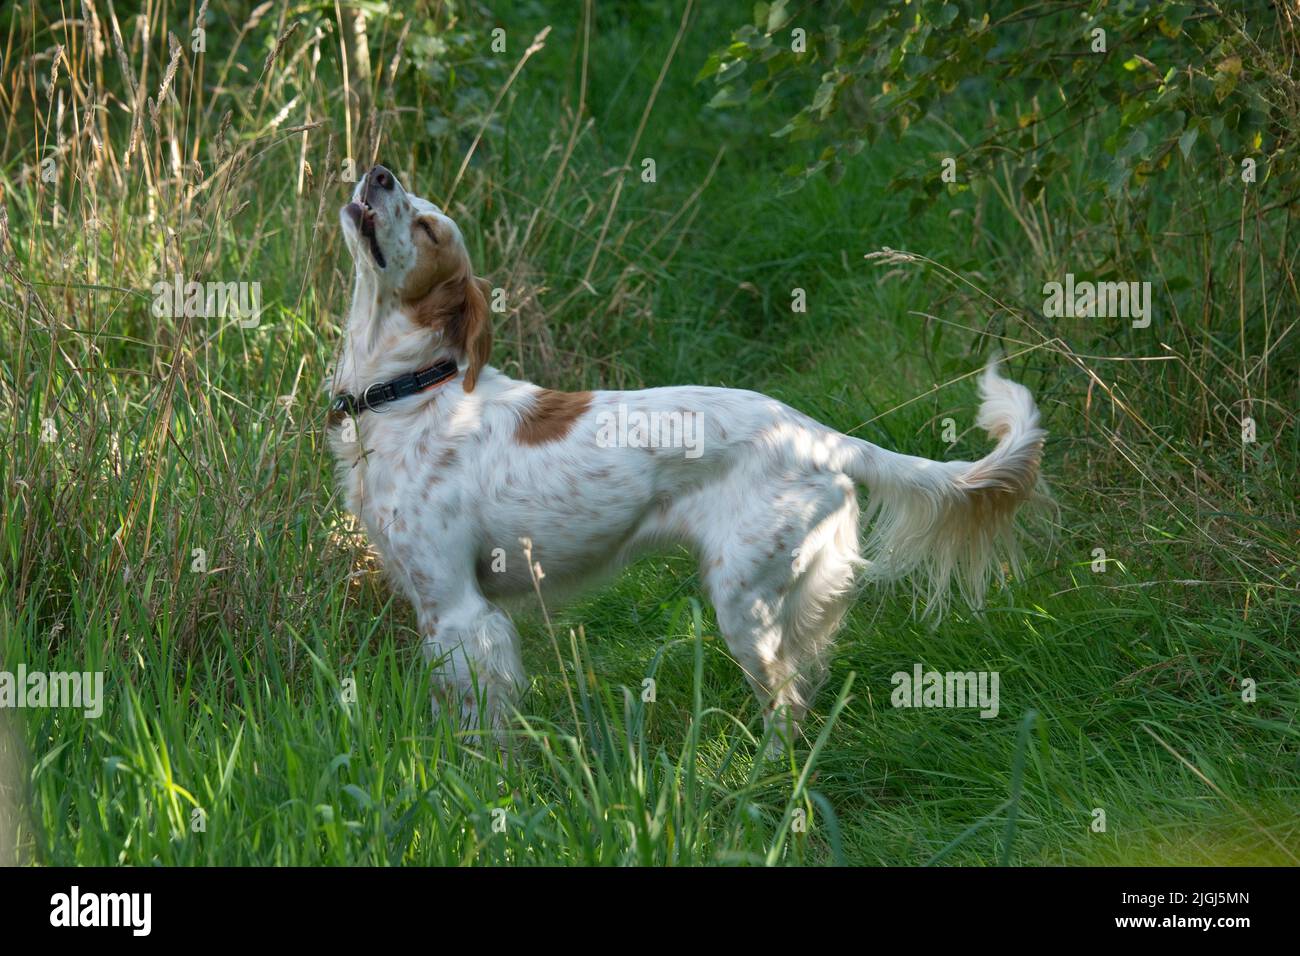 Englischer Setter Hund steht mit erhobener Nase und Mund leicht fangen einen Duft in hellem Wald, Bergland, August Stockfoto